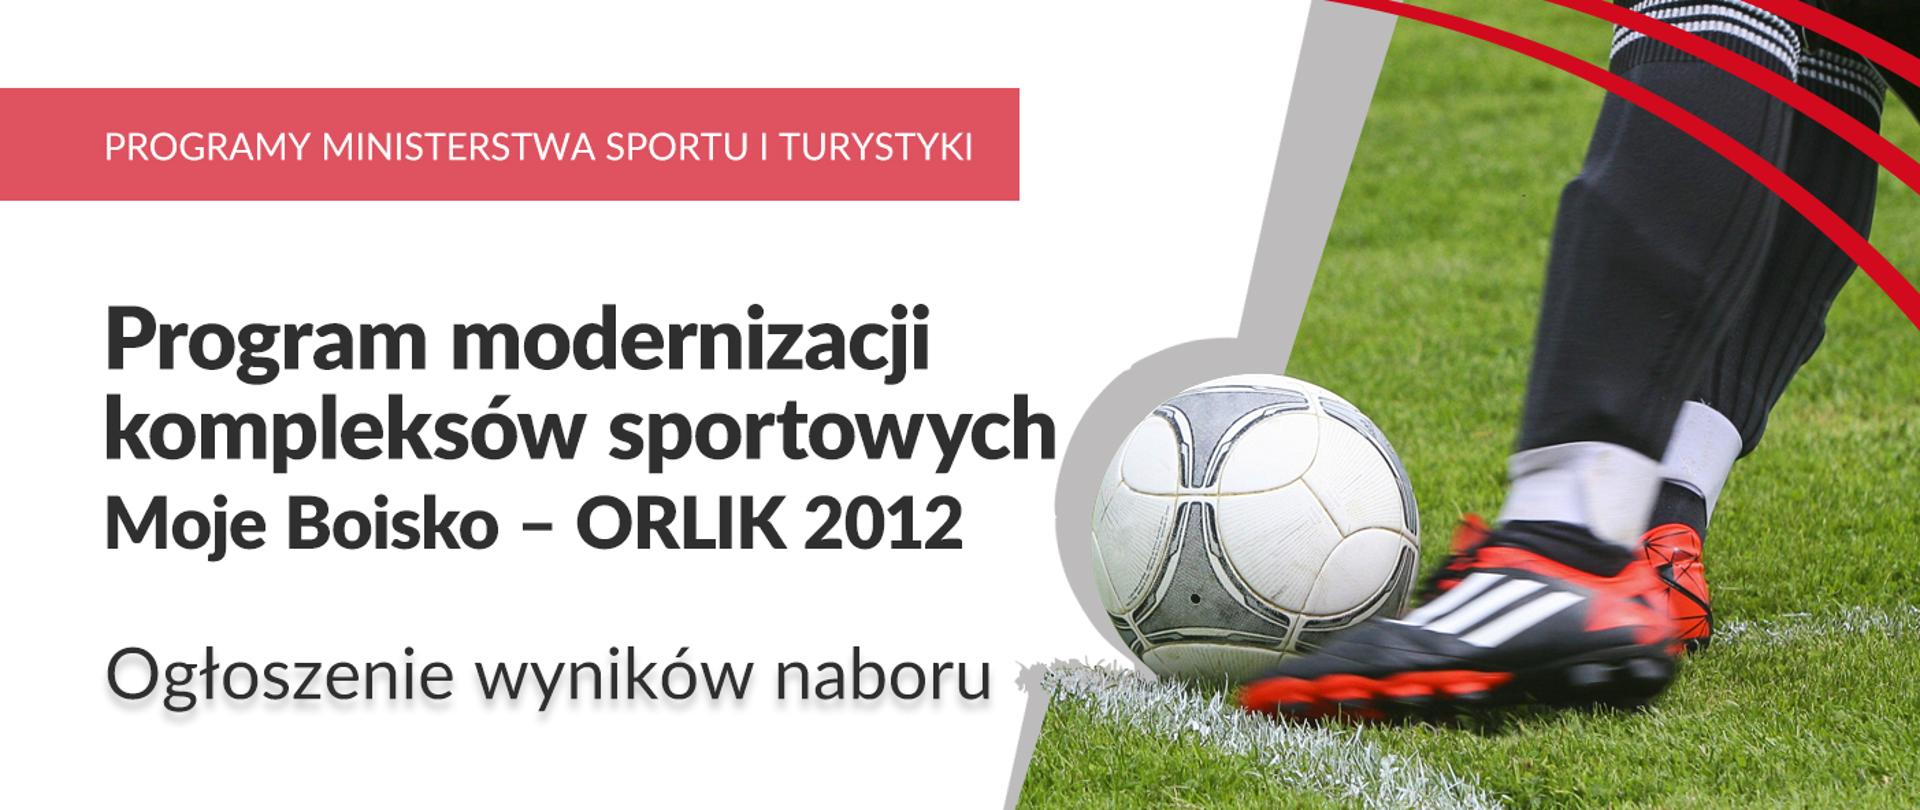 Program modernizacji kompleksów sportowych Moje Boisko – ORLIK 2012. Ogłoszenie wyników naboru - plansza ze zdjęciem nogi, która kopie piłkę na murawie piłkarskiej.